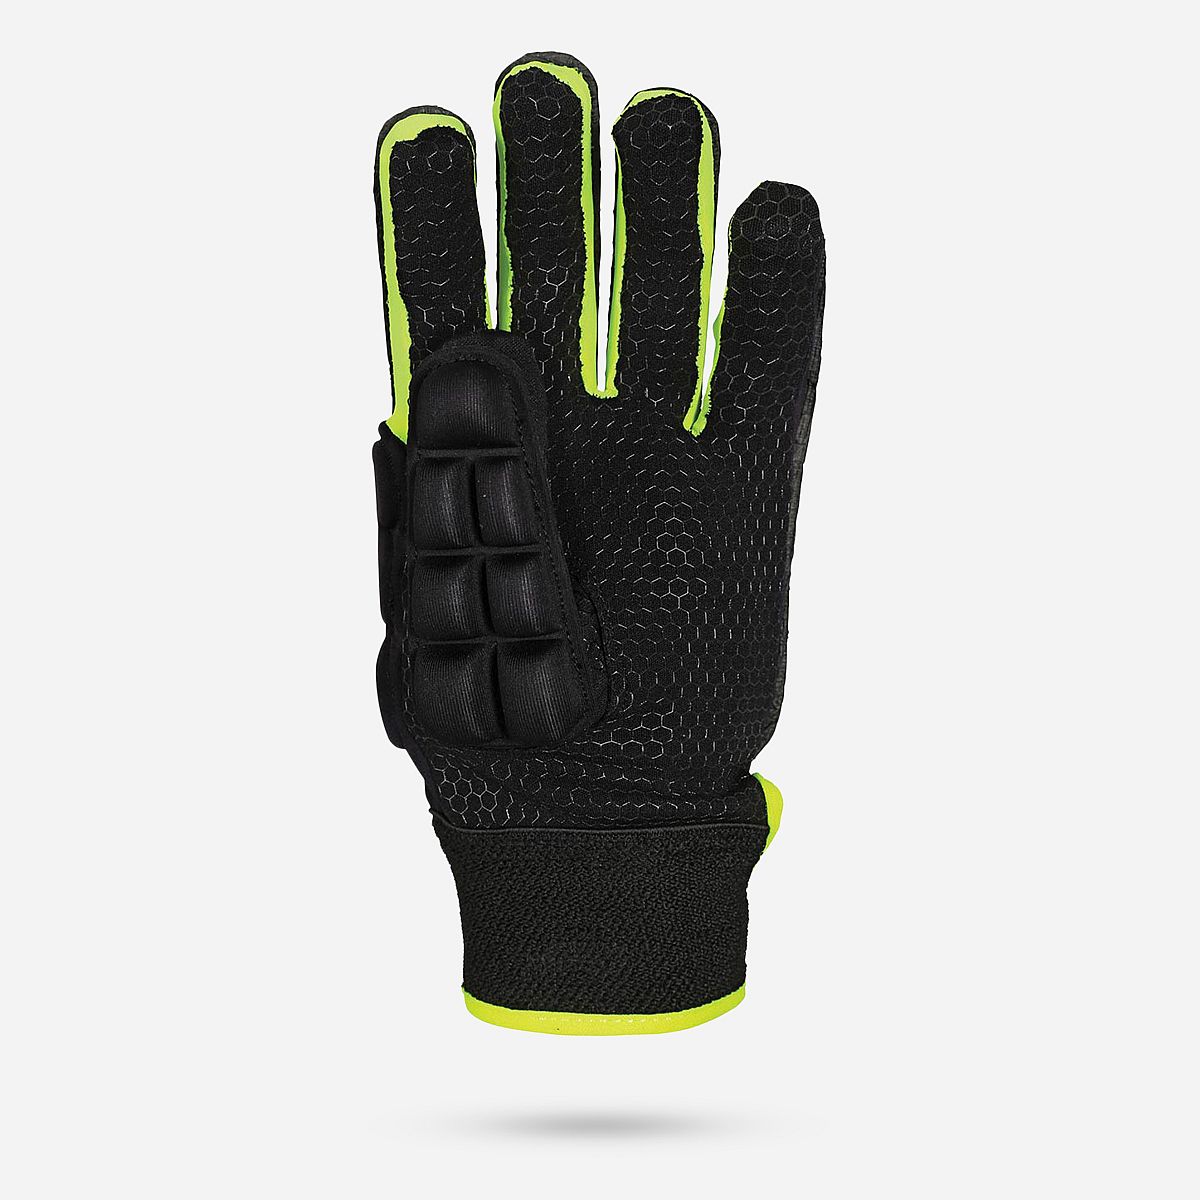 AN131135 International Pro Glove (linkshandig)